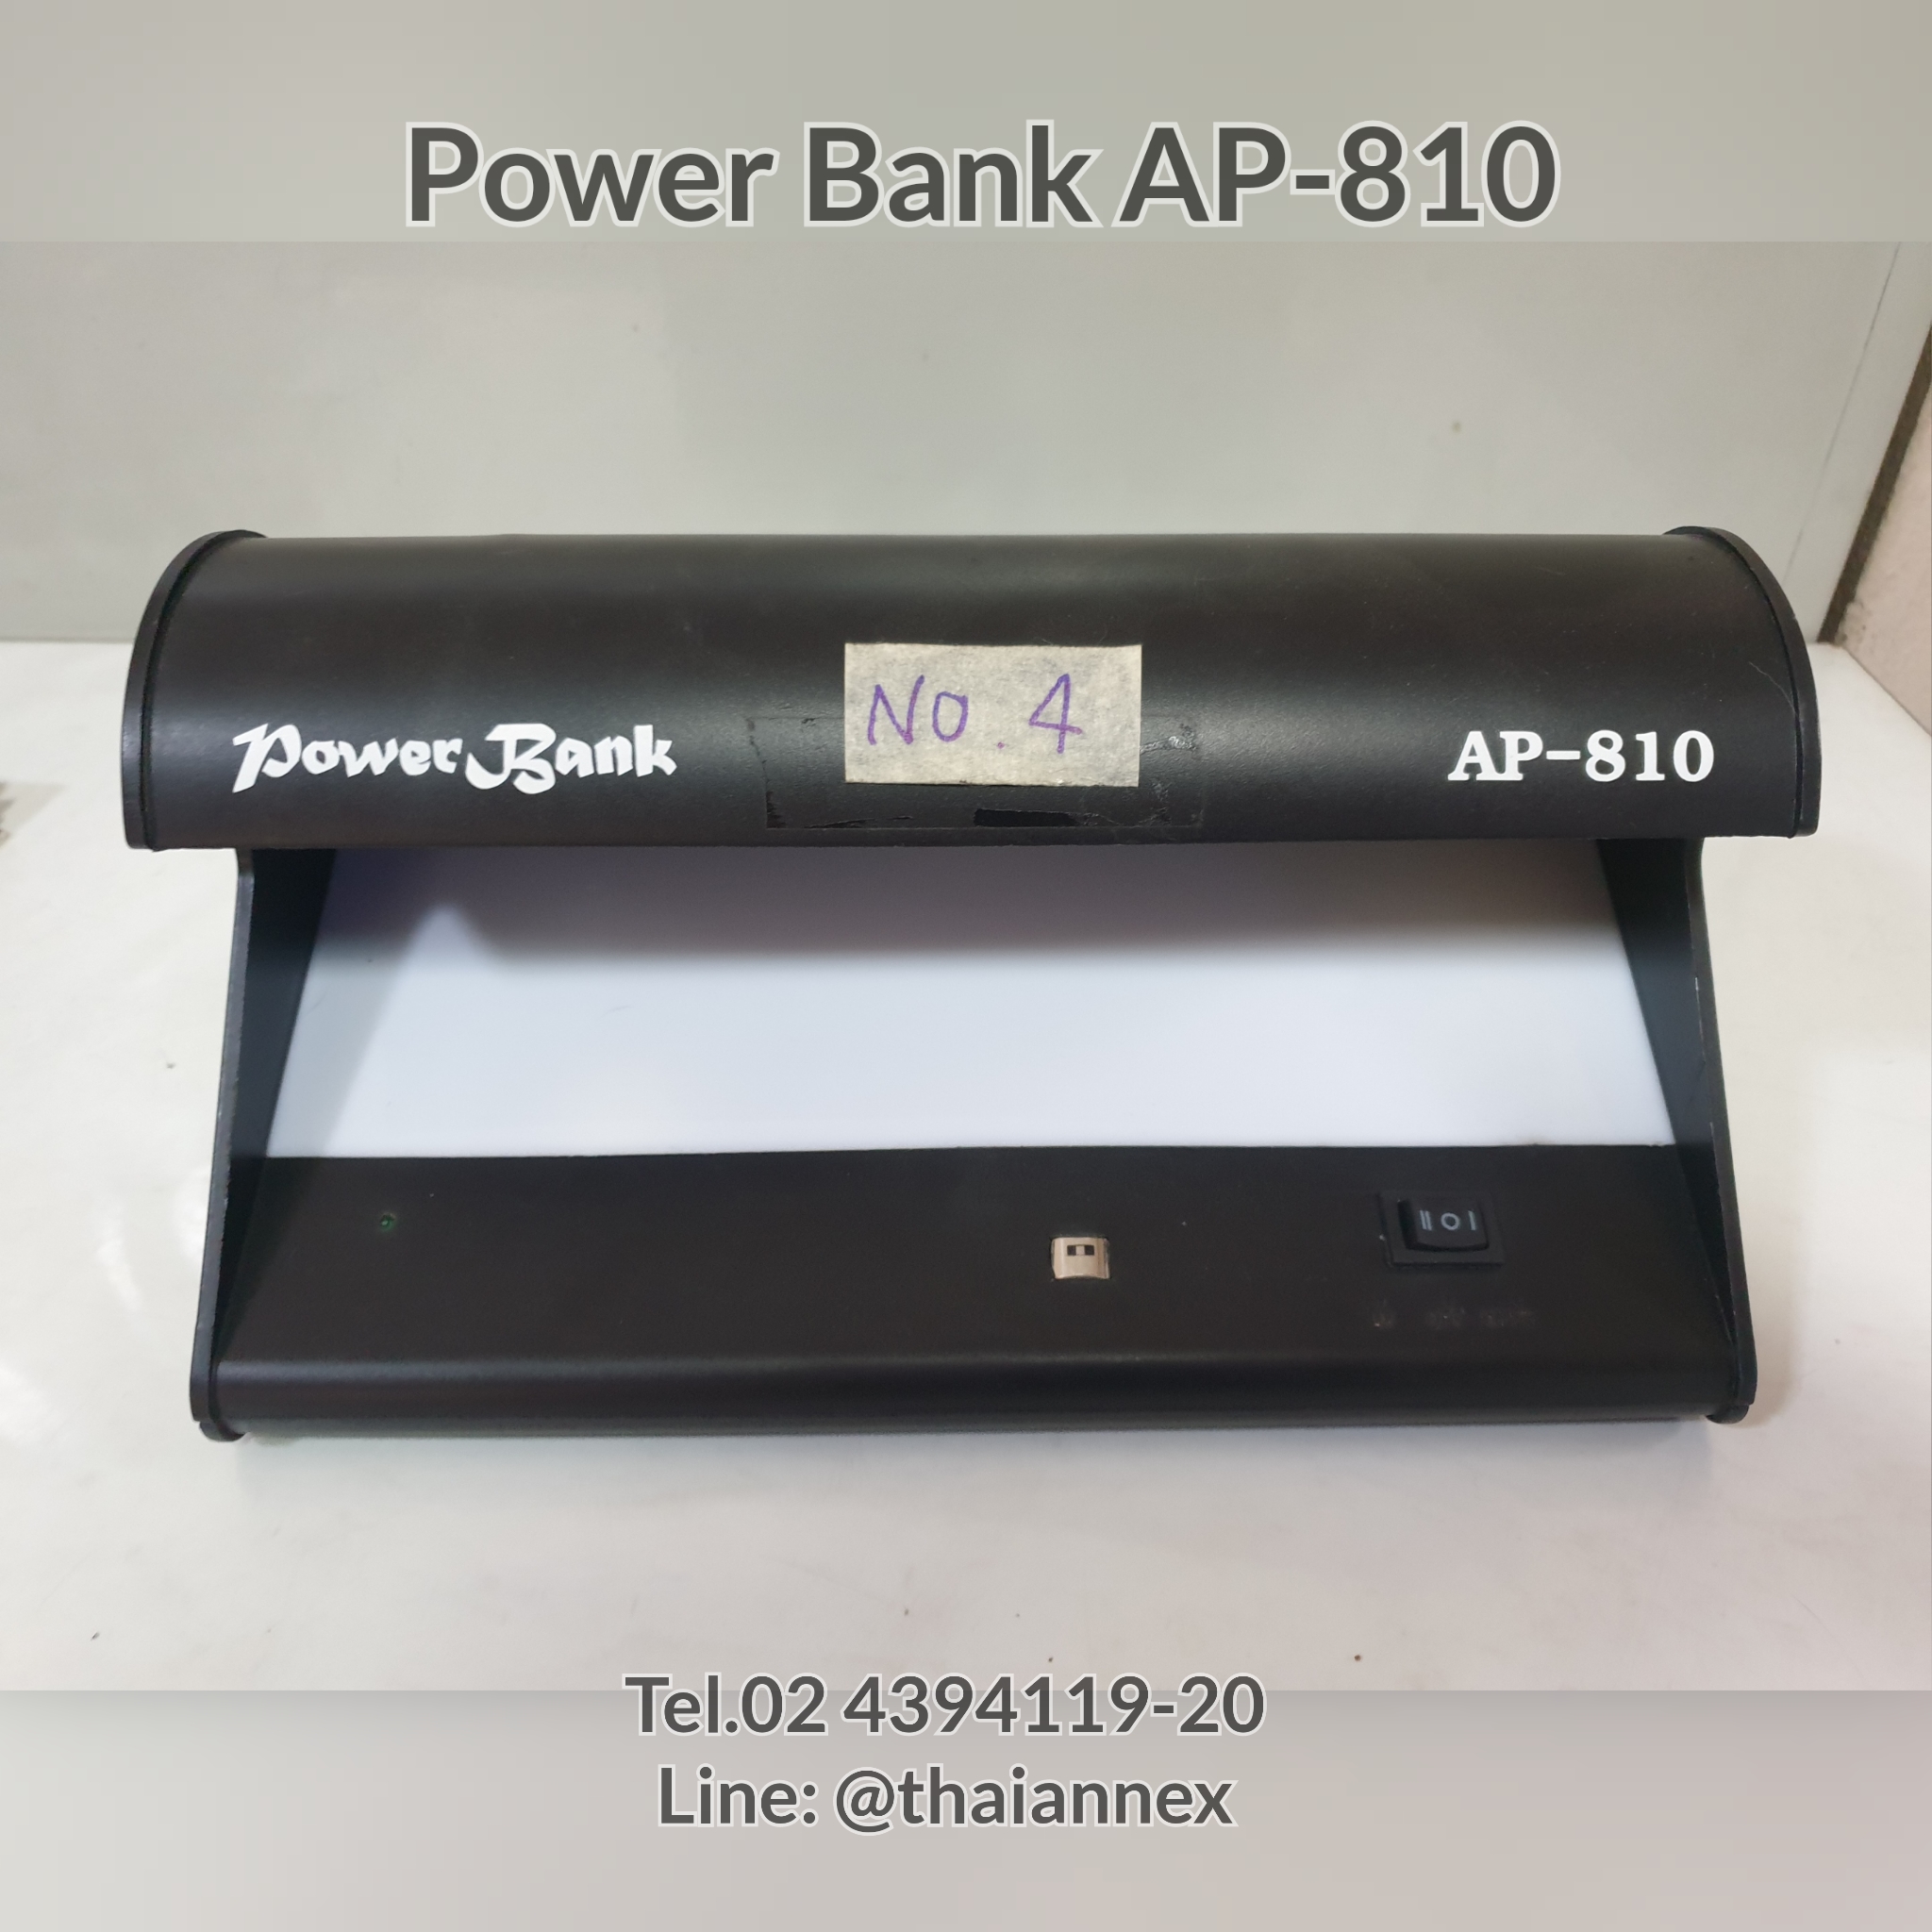 เครื่องตรวจธนบัตร Power Bank AP-810 (เครื่องที่ 4)